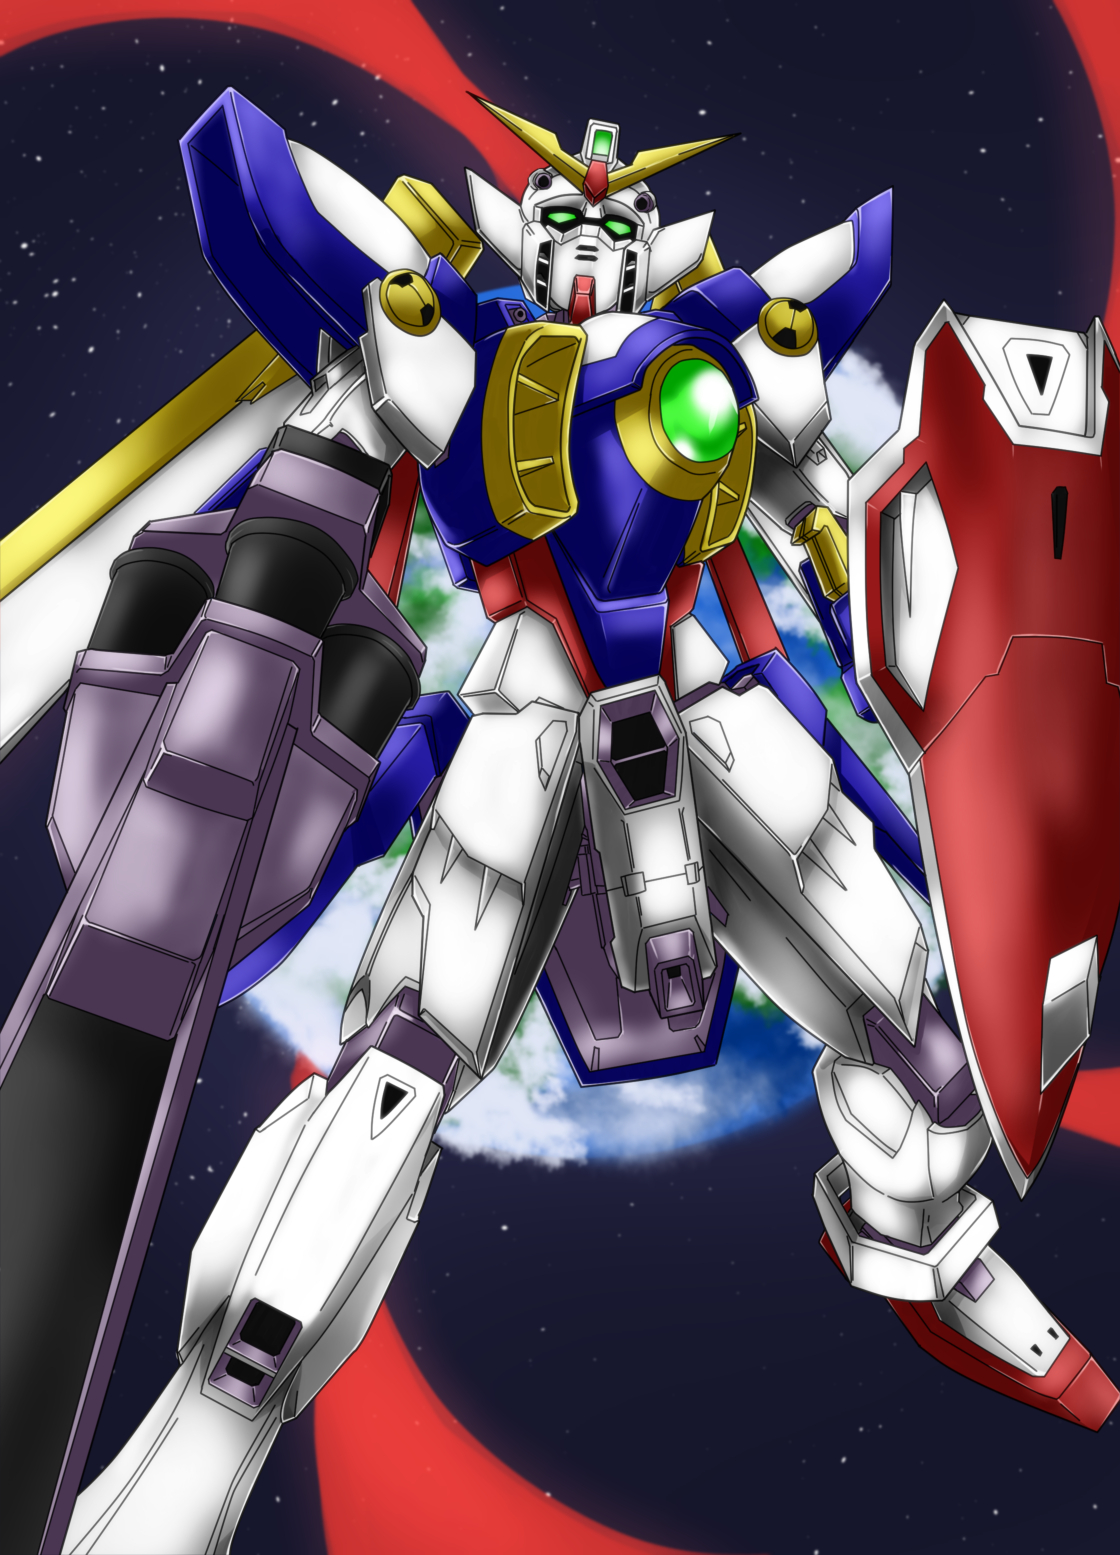 Wing Gundam Mobile Suit Gundam Wing Anime Mechs Gundam Super Robot Wars Artwork Digital Art Fan Art 1120x1555